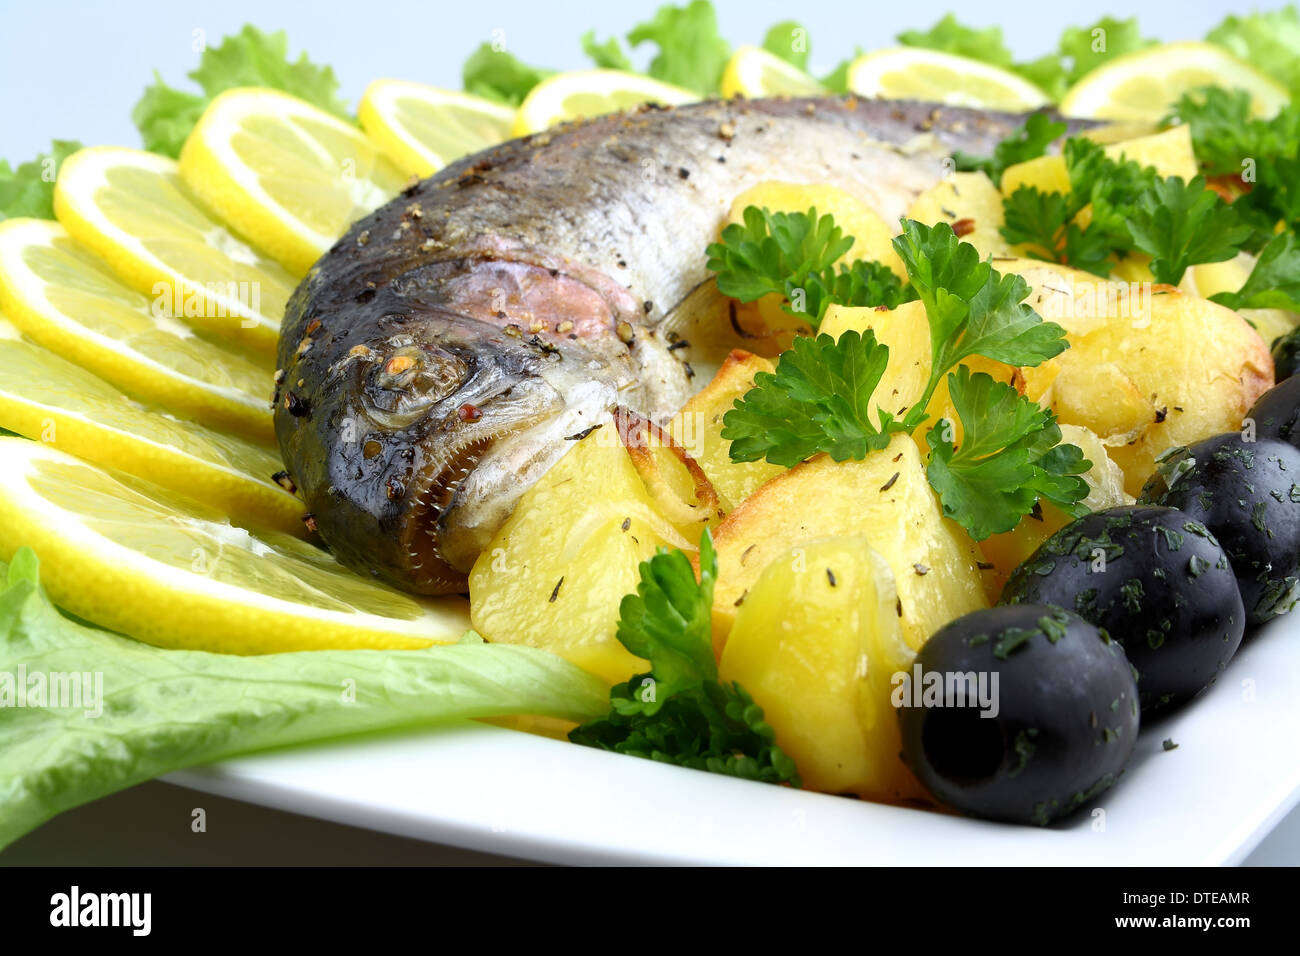 Truite grillée avec des pommes de terre, salade, olives noires, citron, Close up Banque D'Images